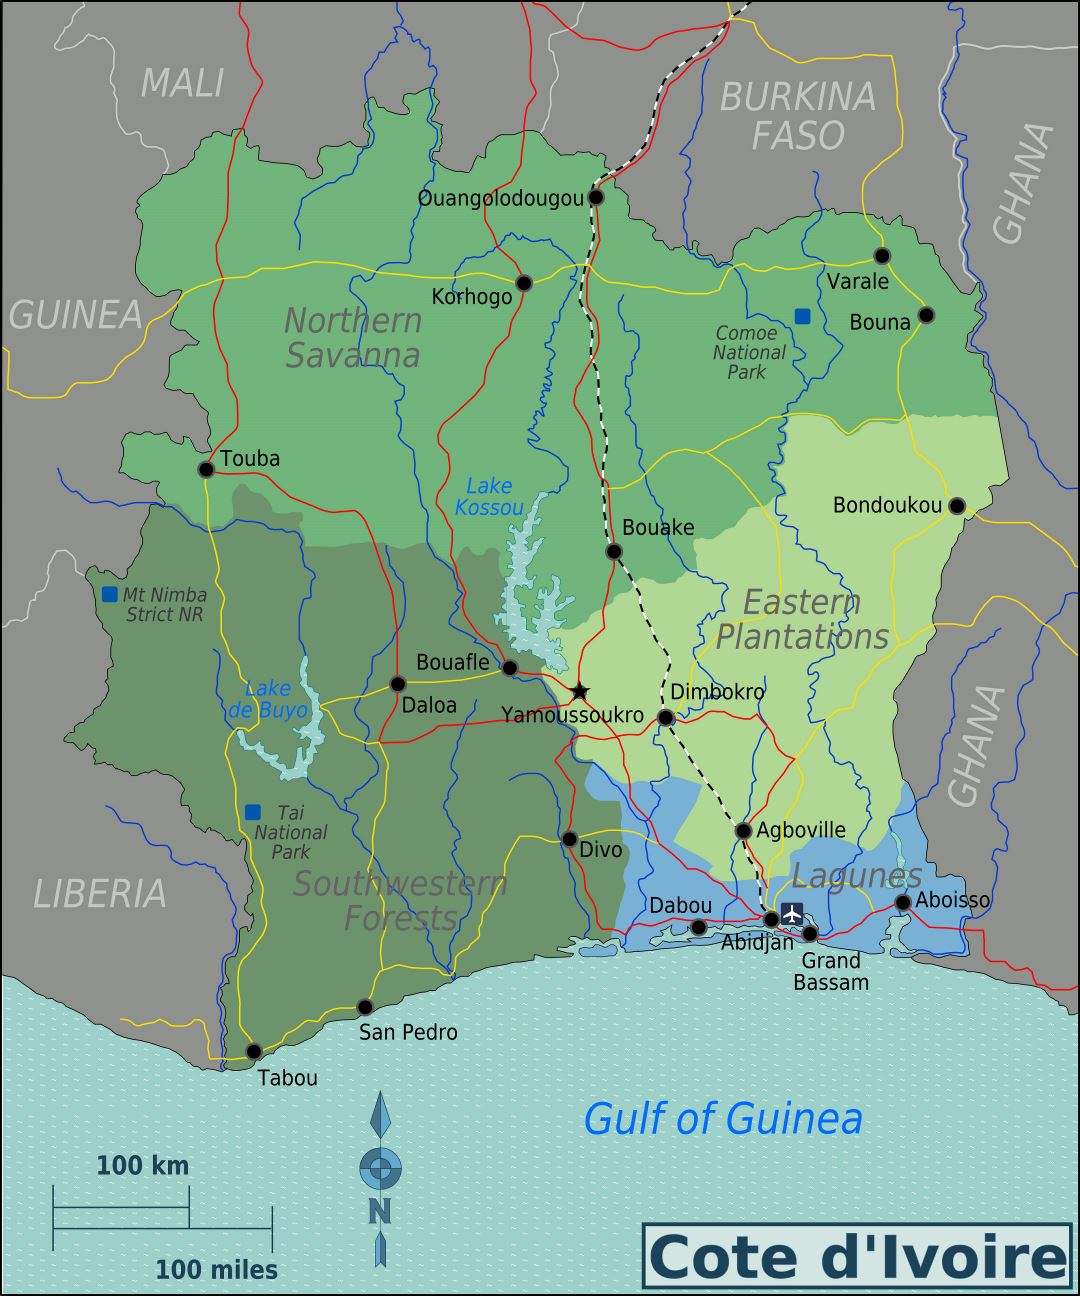 Large regions map of Cote d'Ivoire